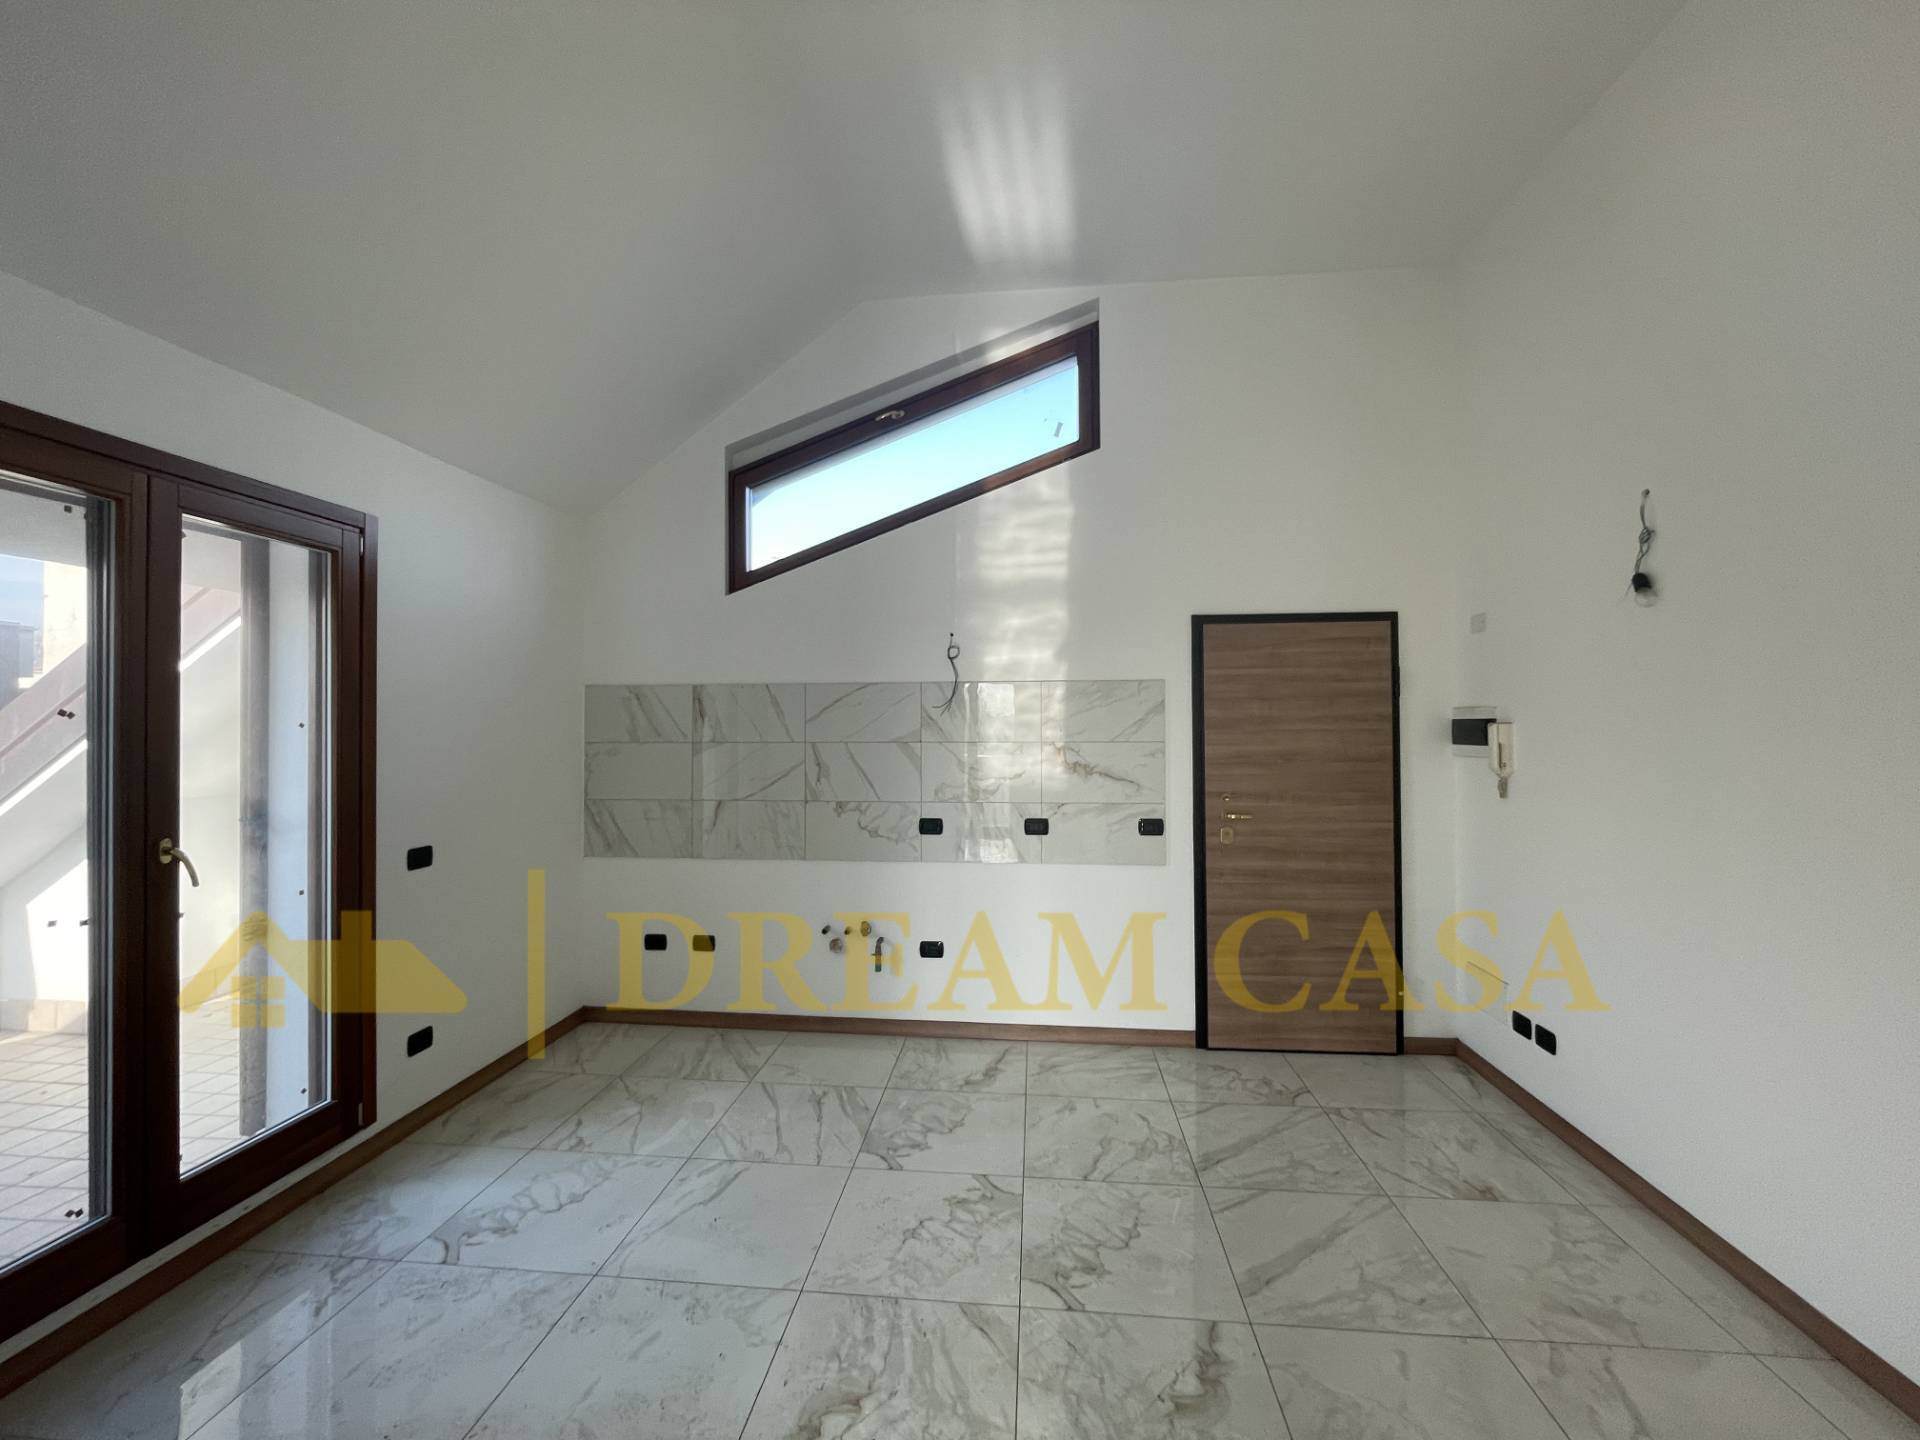 Appartamento in vendita a Cassina de' Pecchi, 2 locali, prezzo € 185.000 | PortaleAgenzieImmobiliari.it